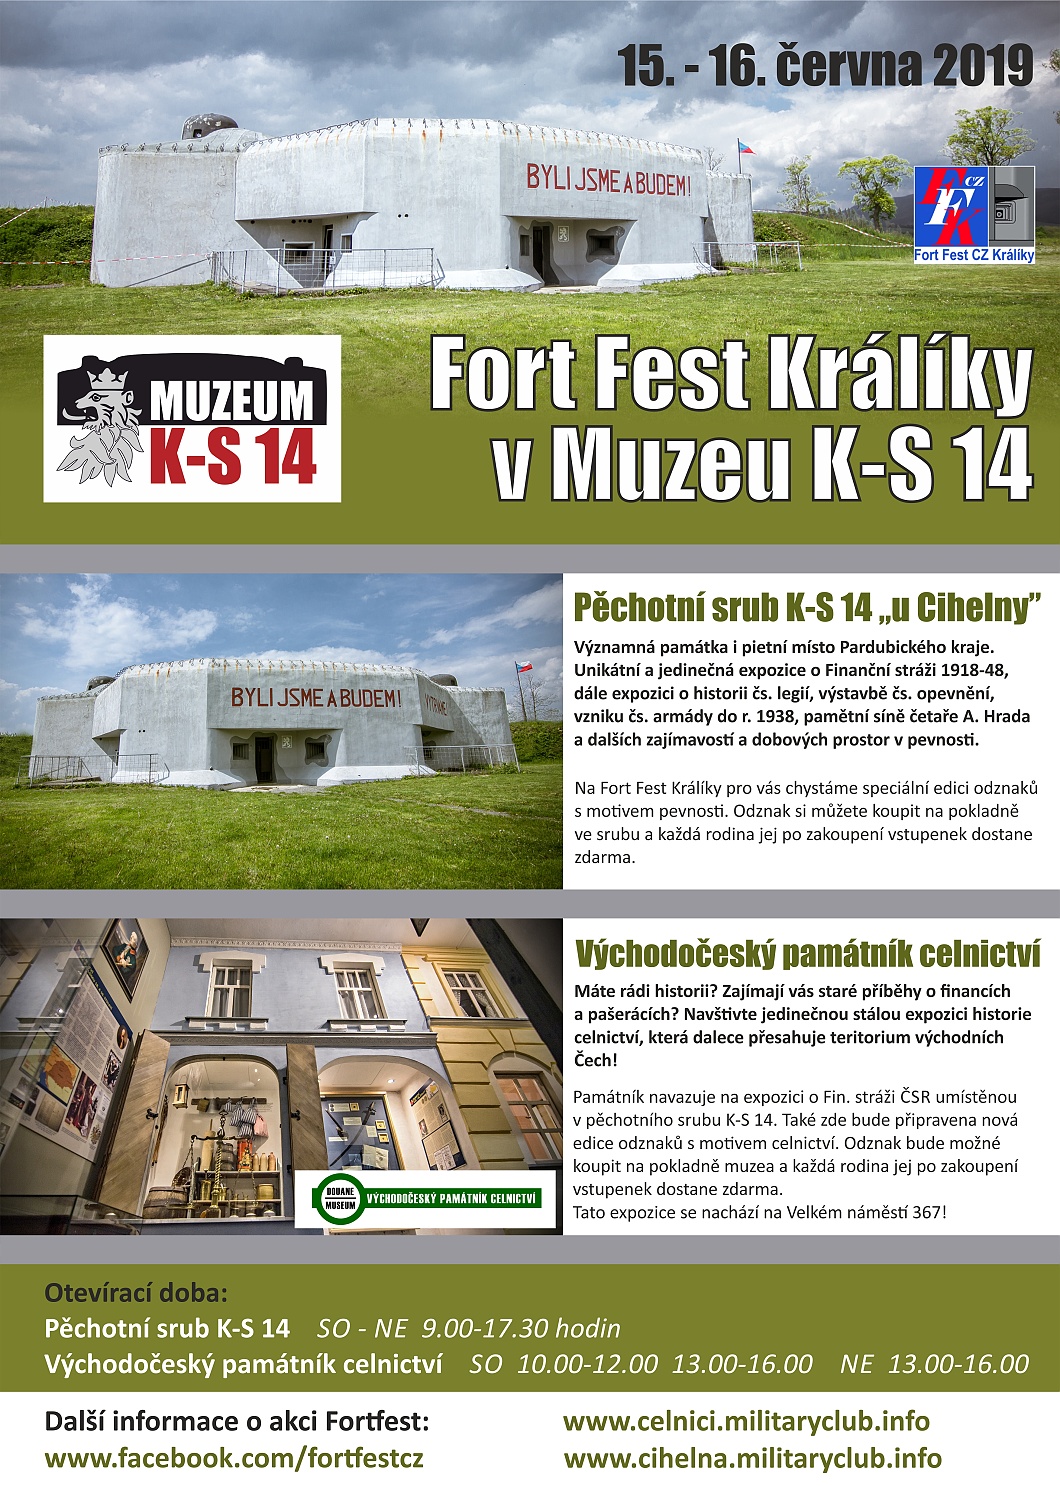 Fort Fest Králíky v Muzeum K-S 14